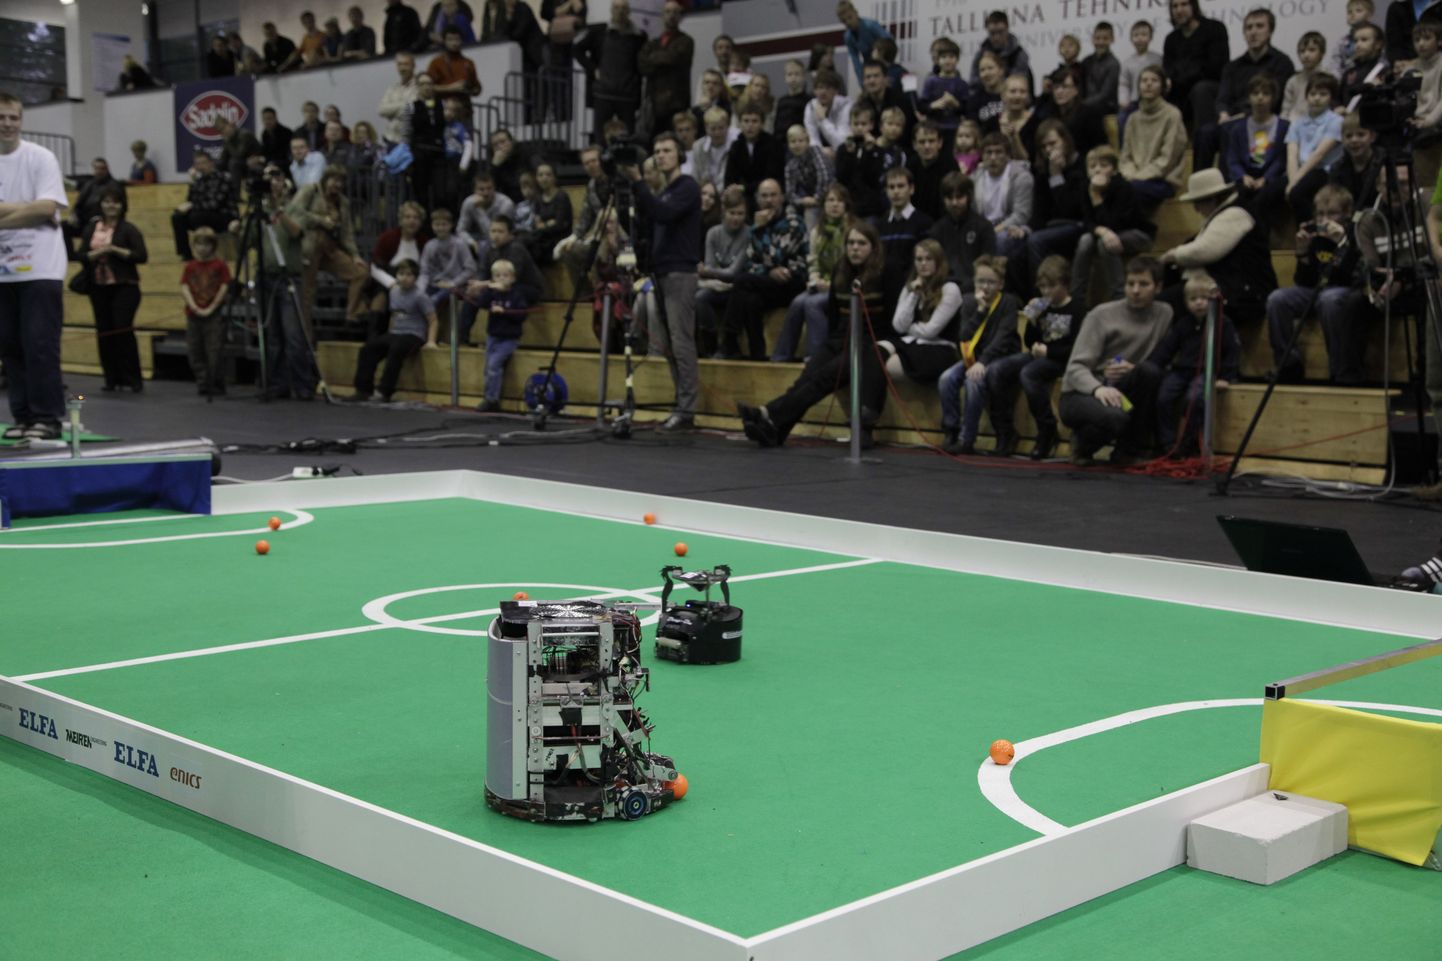 О том, что интерес к выставке Robotex, организуемой Таллиннским техническим университетом, растет год от года, свидетельствуют рекорды посещаемости: в 2012 году ее посетили 6,5 тысячи человек, более 500 участников и померились силами около 150 роботов. На фото: главное соревнование выставки – футбол, робот Palmer против малыша  Drag-On.